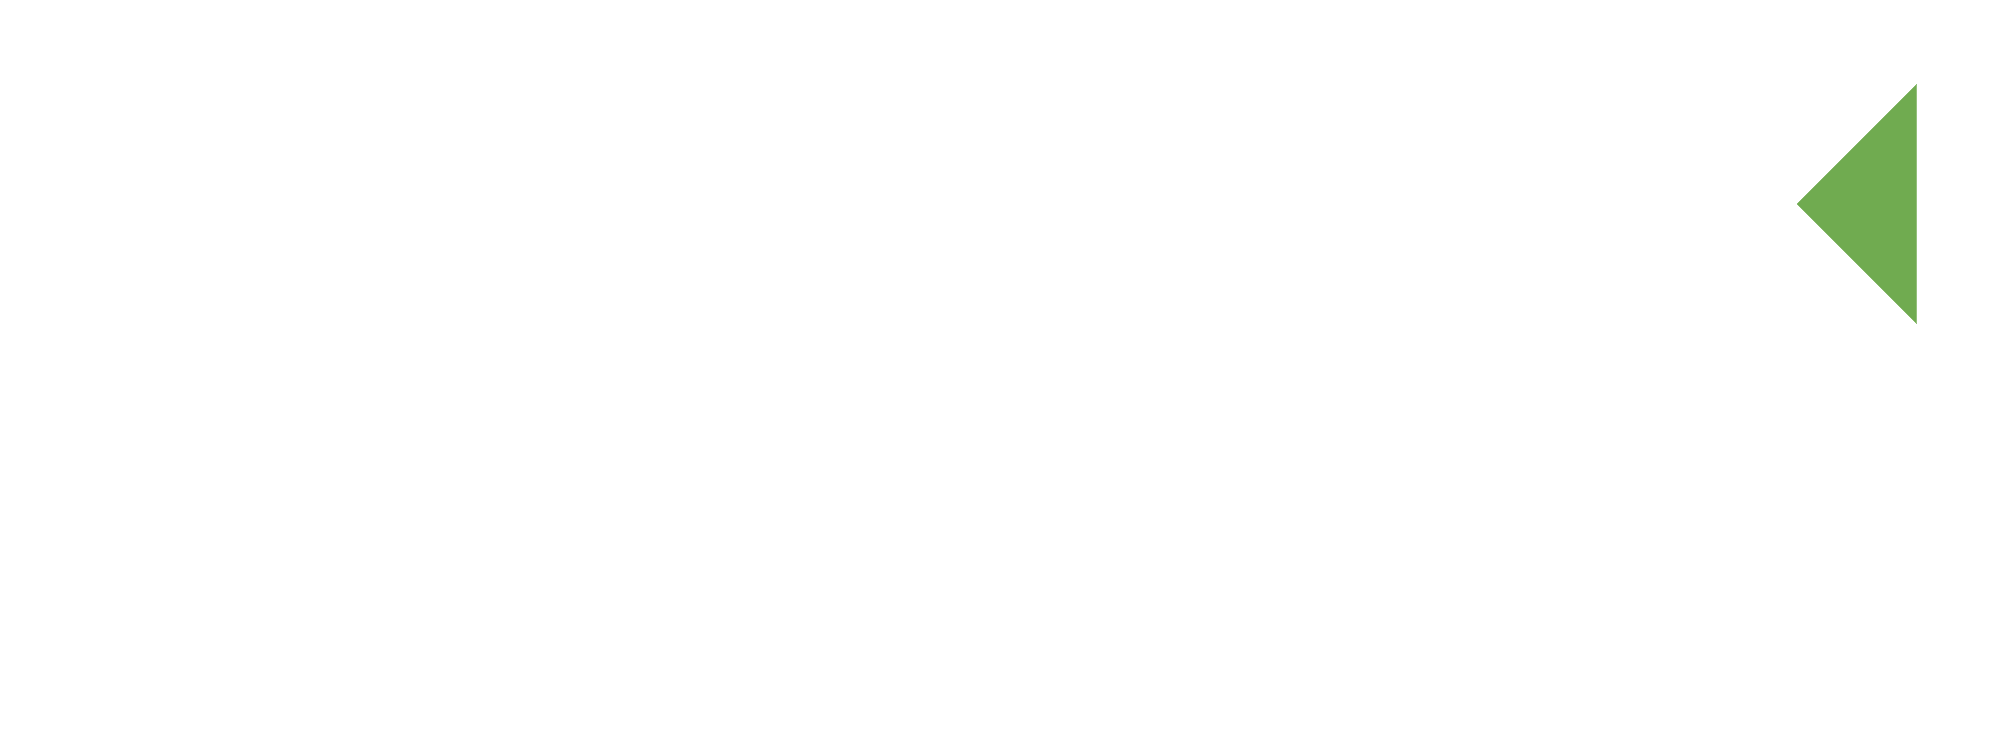 CUTEK Timber Protection - New Zealand